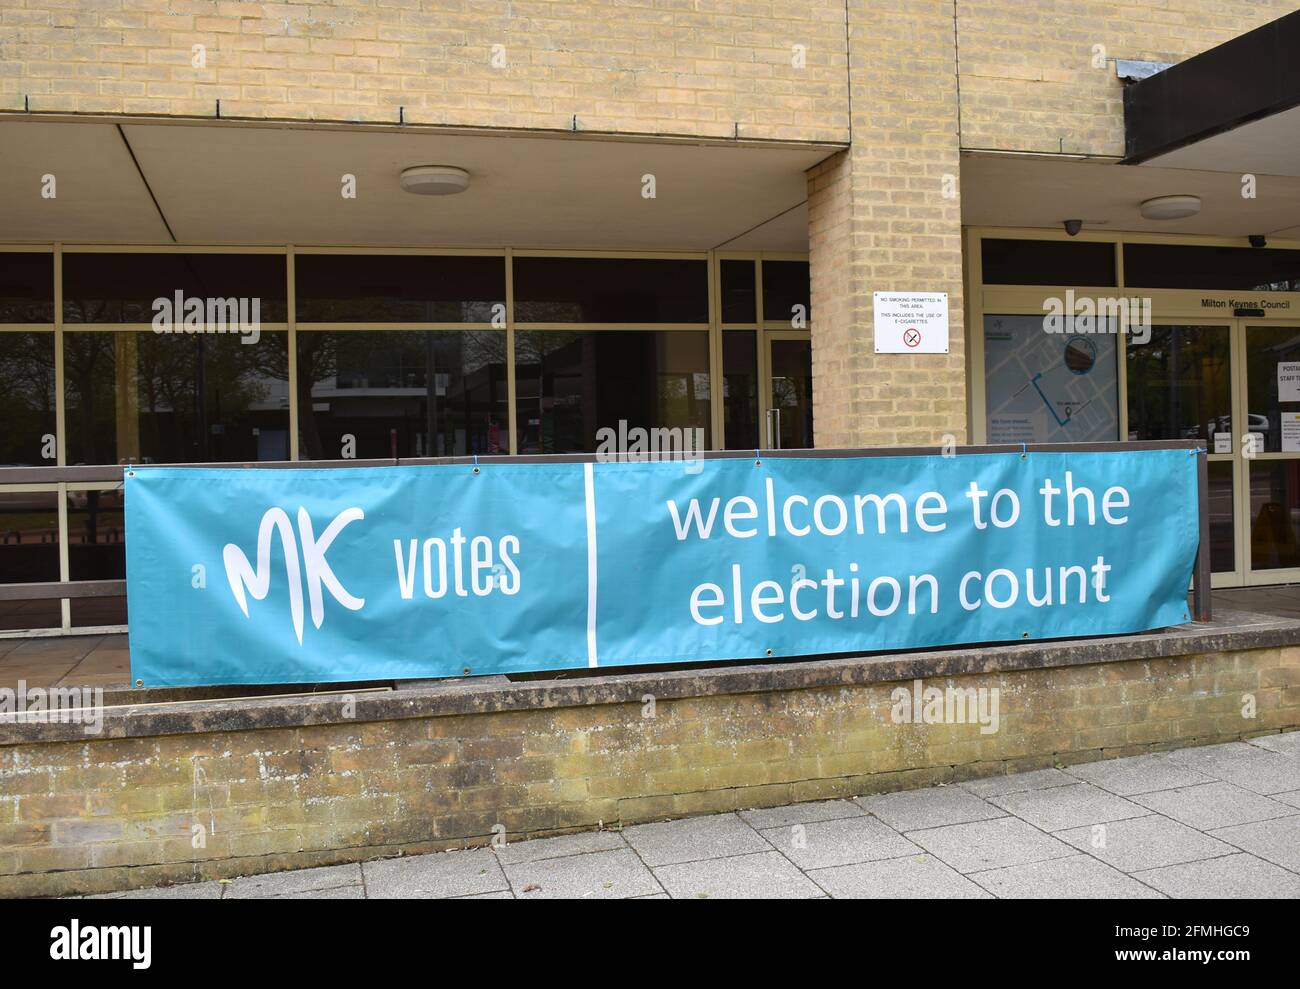 Banner en la oficina donde se realizará el escrutinio de los votos emitidos: 'LOS votos MK son bienvenidos al escrutinio electoral'. Foto de stock